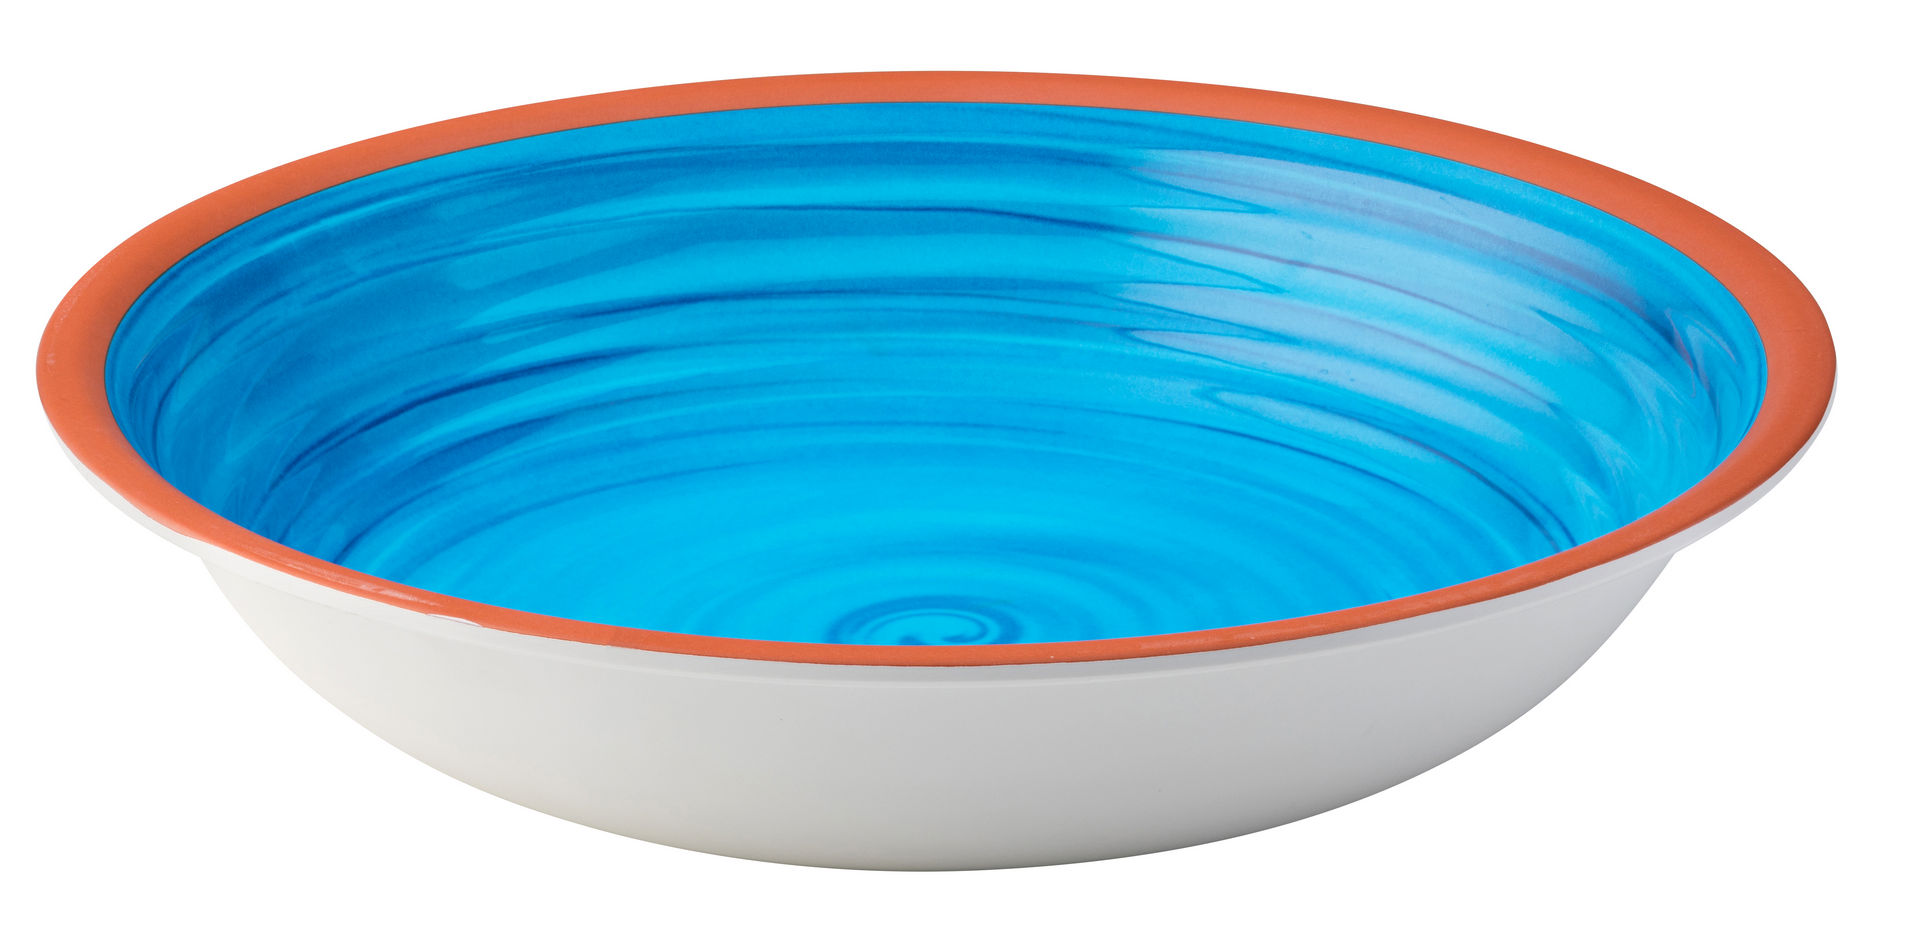 Calypso Blue Bowl 13.5